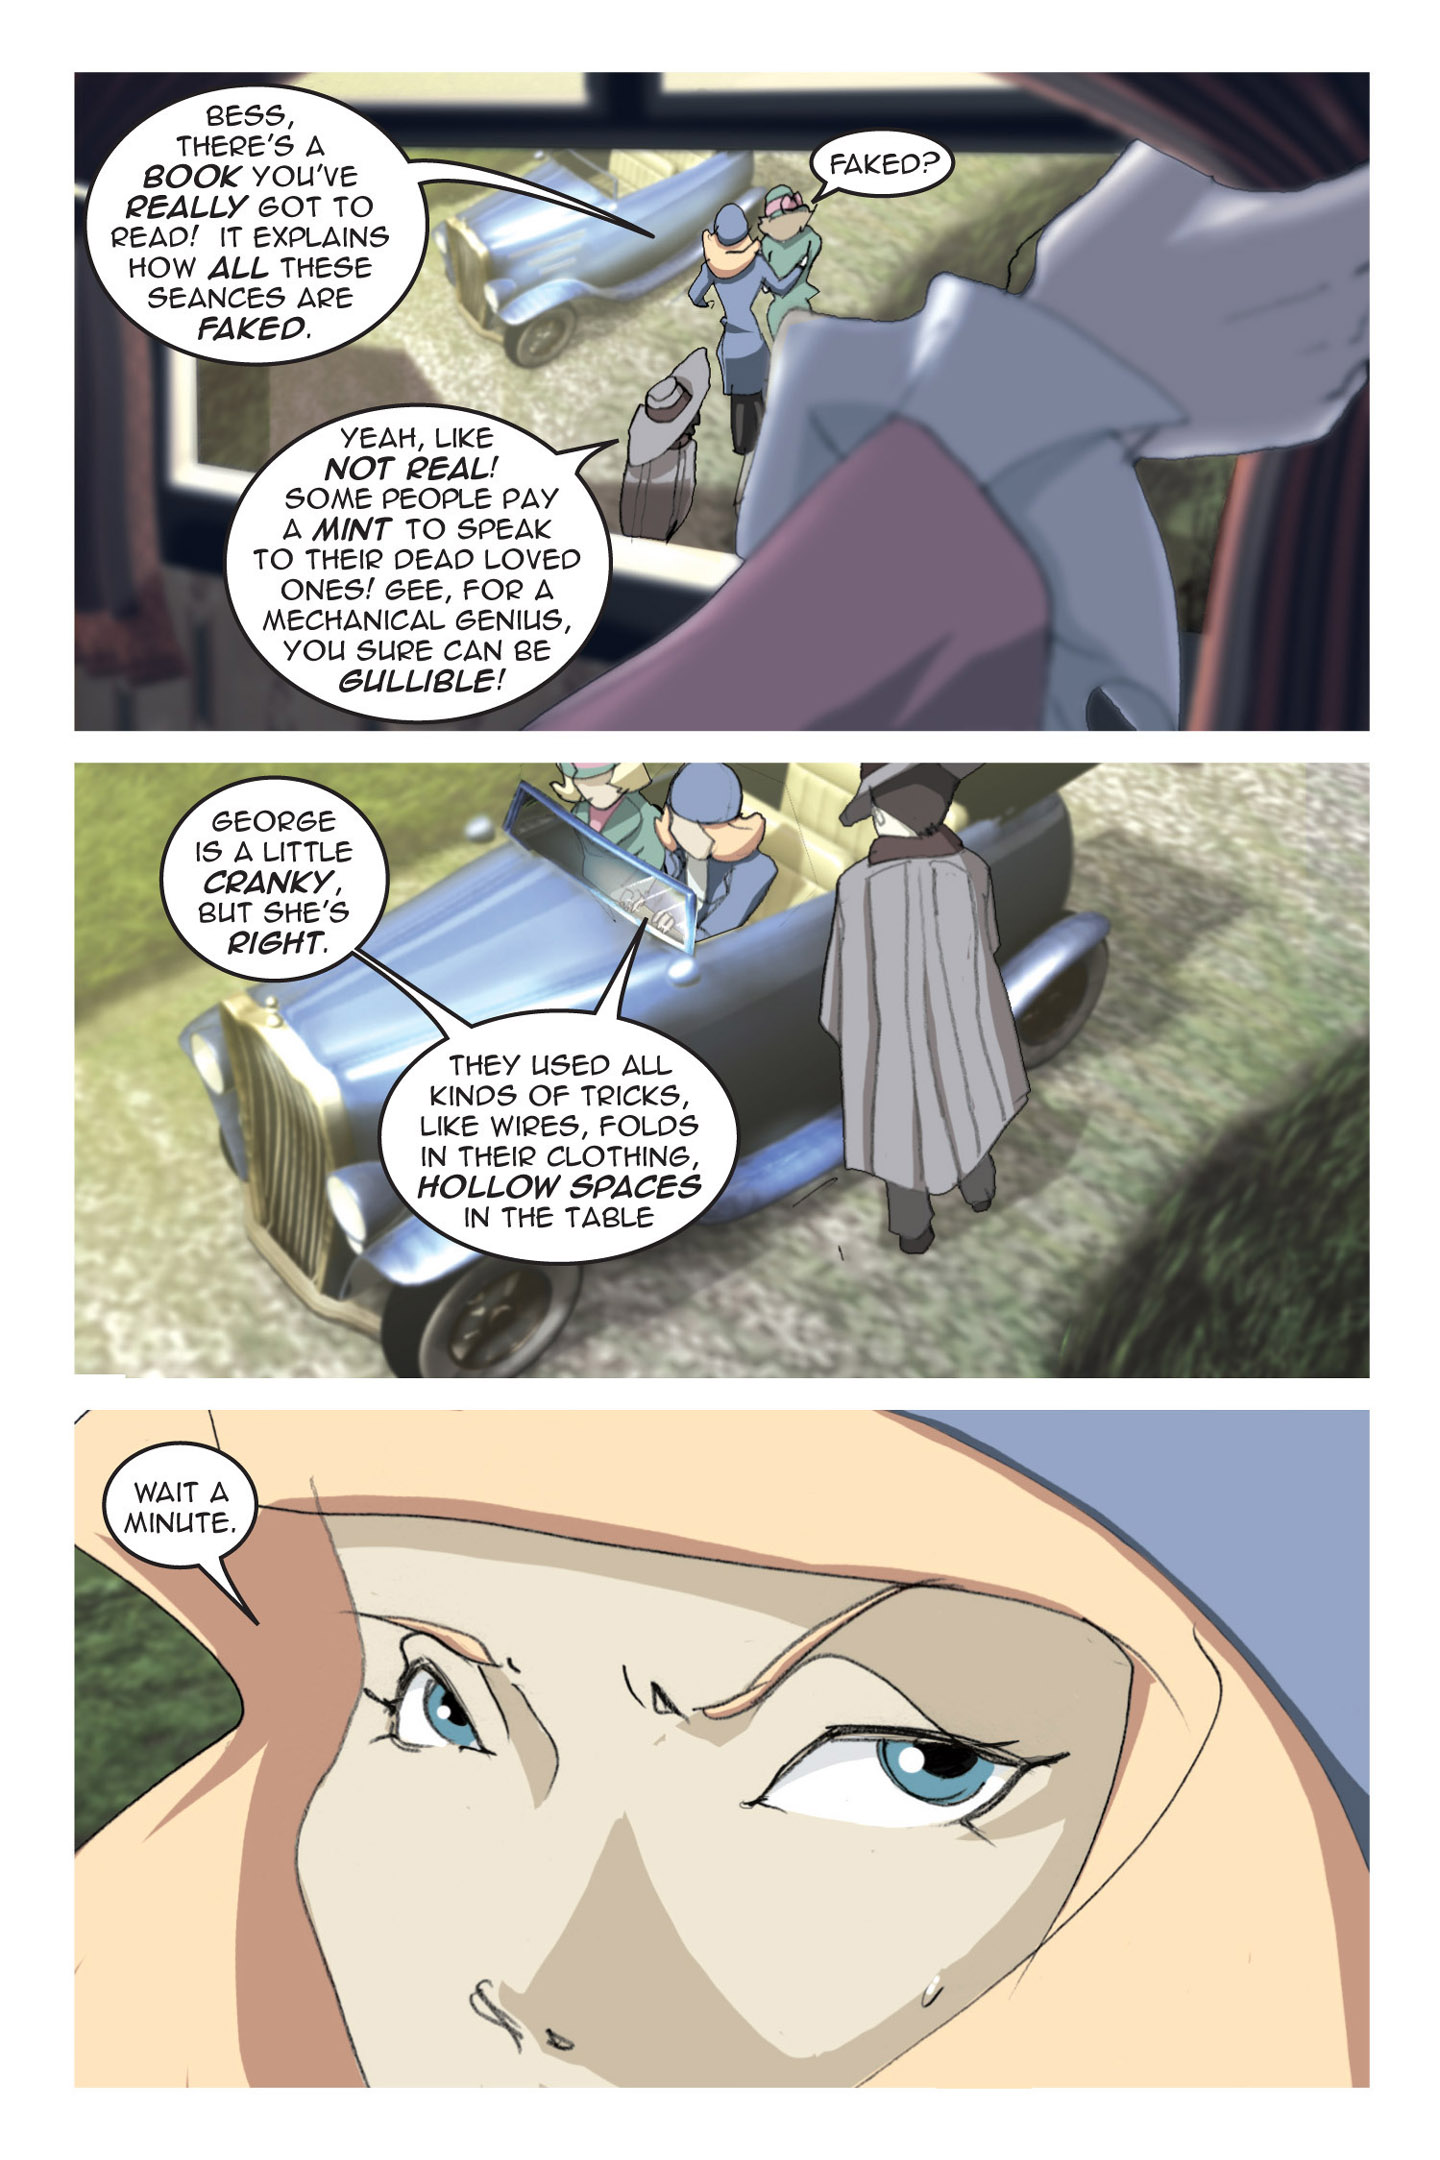 Read online Nancy Drew comic -  Issue #3 - 55